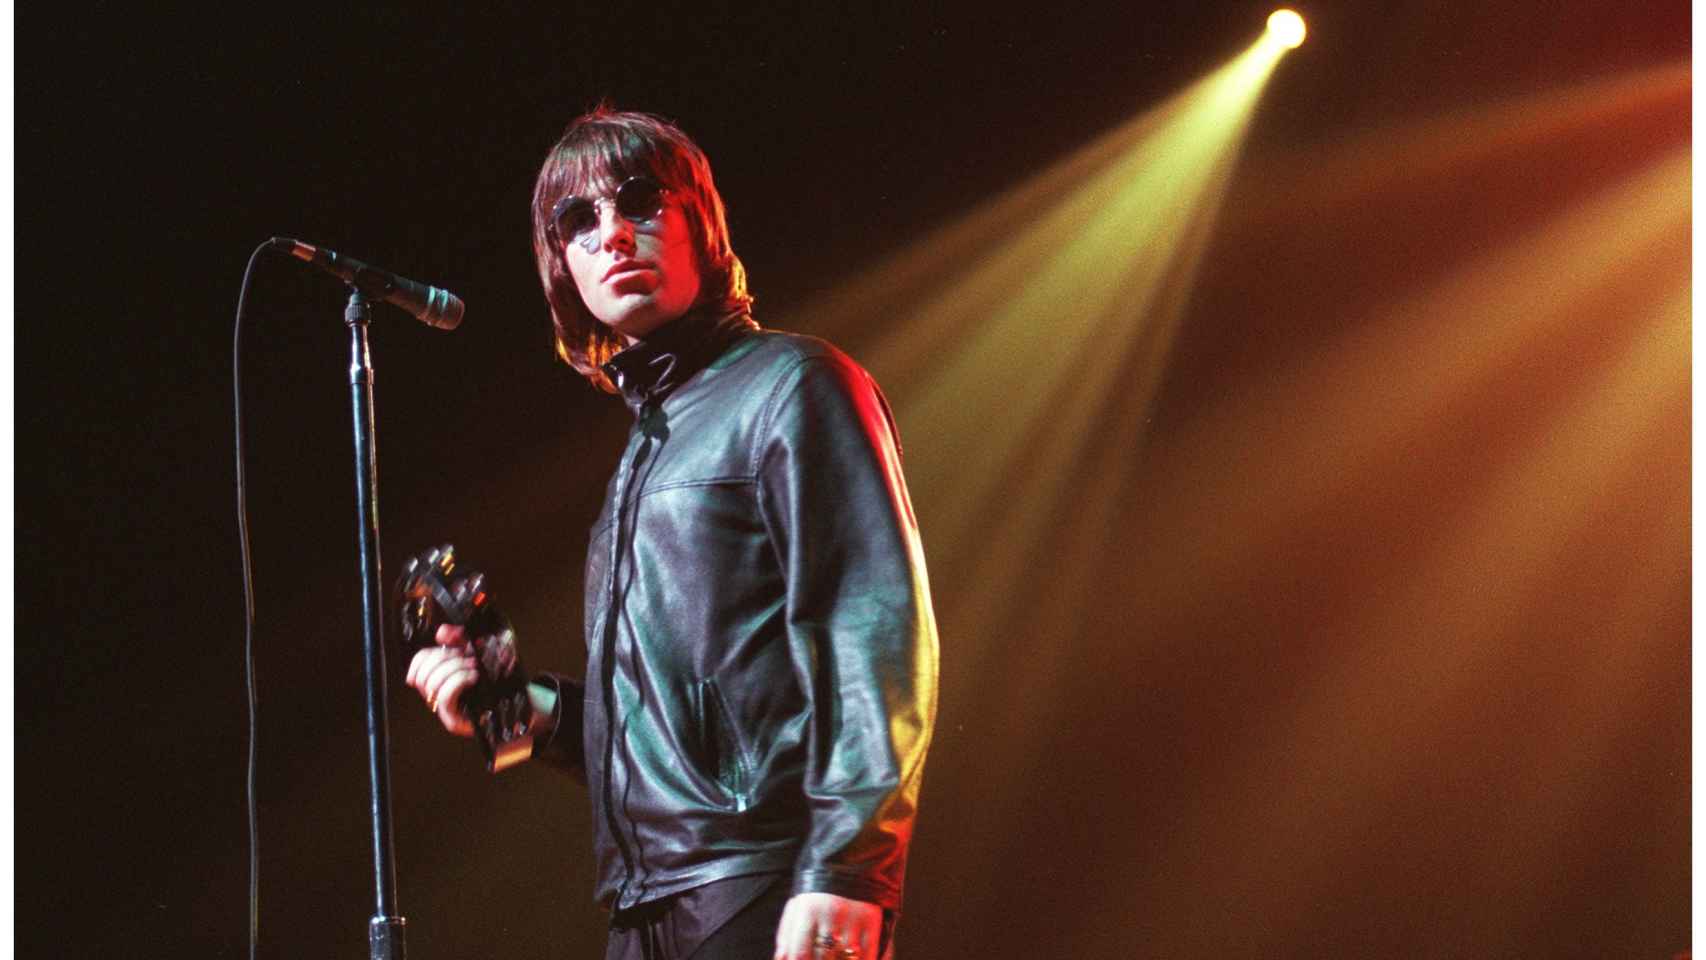 El cantante de Oasis, Liam Gallagher, en un concierto en Estados Unidos. | Foto: Getty Images.